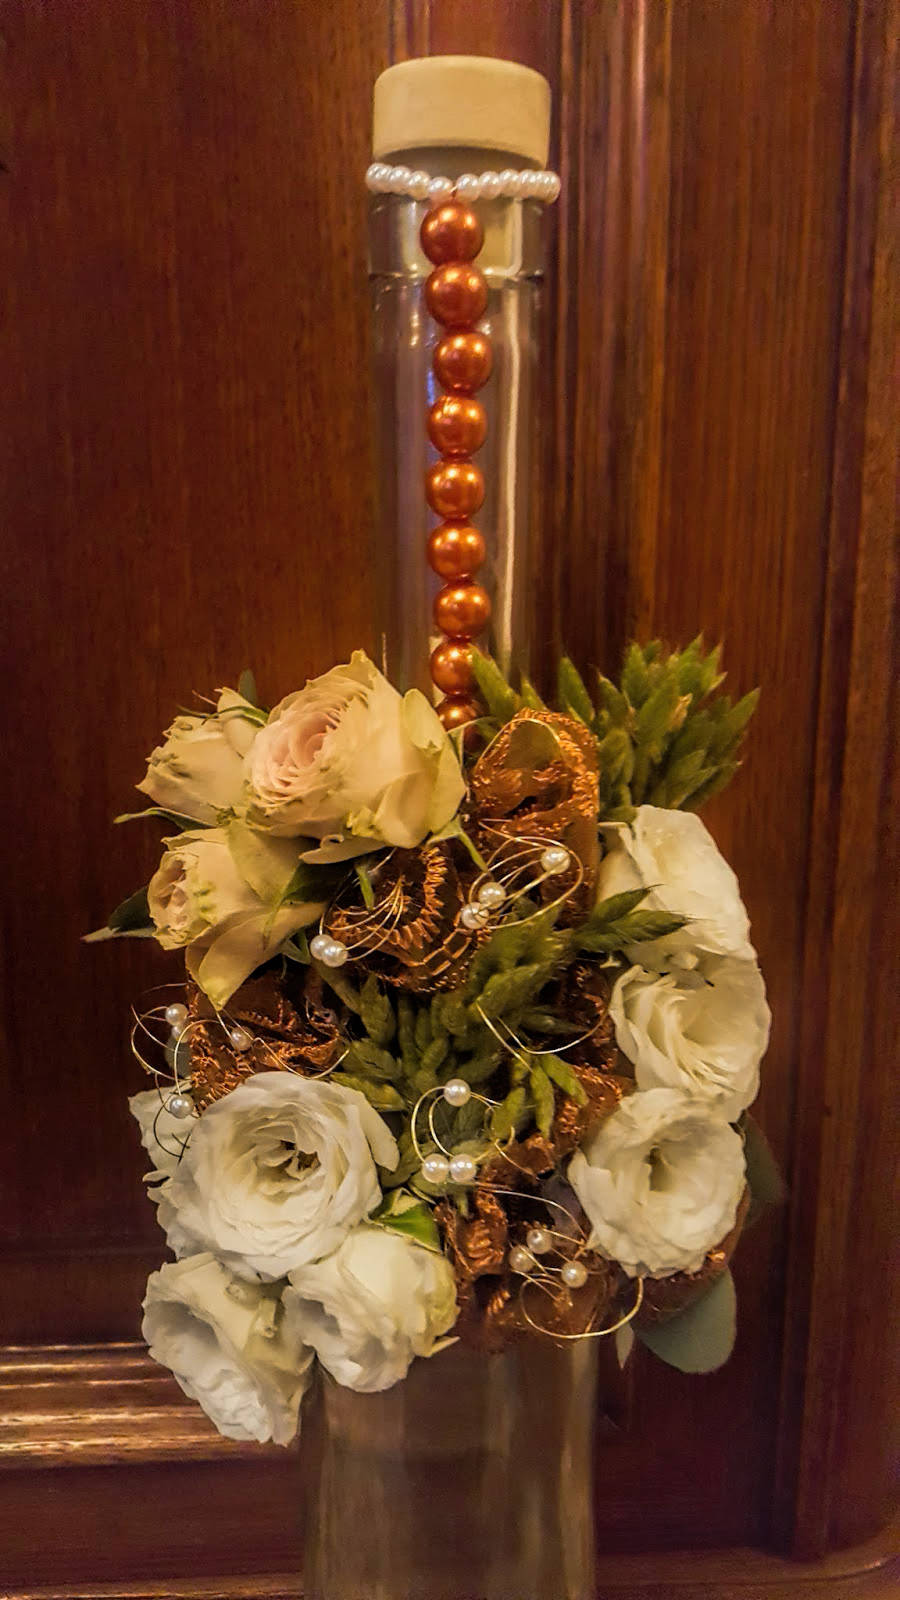 Virágkötő tanfolyam - Dísz, dekoráció